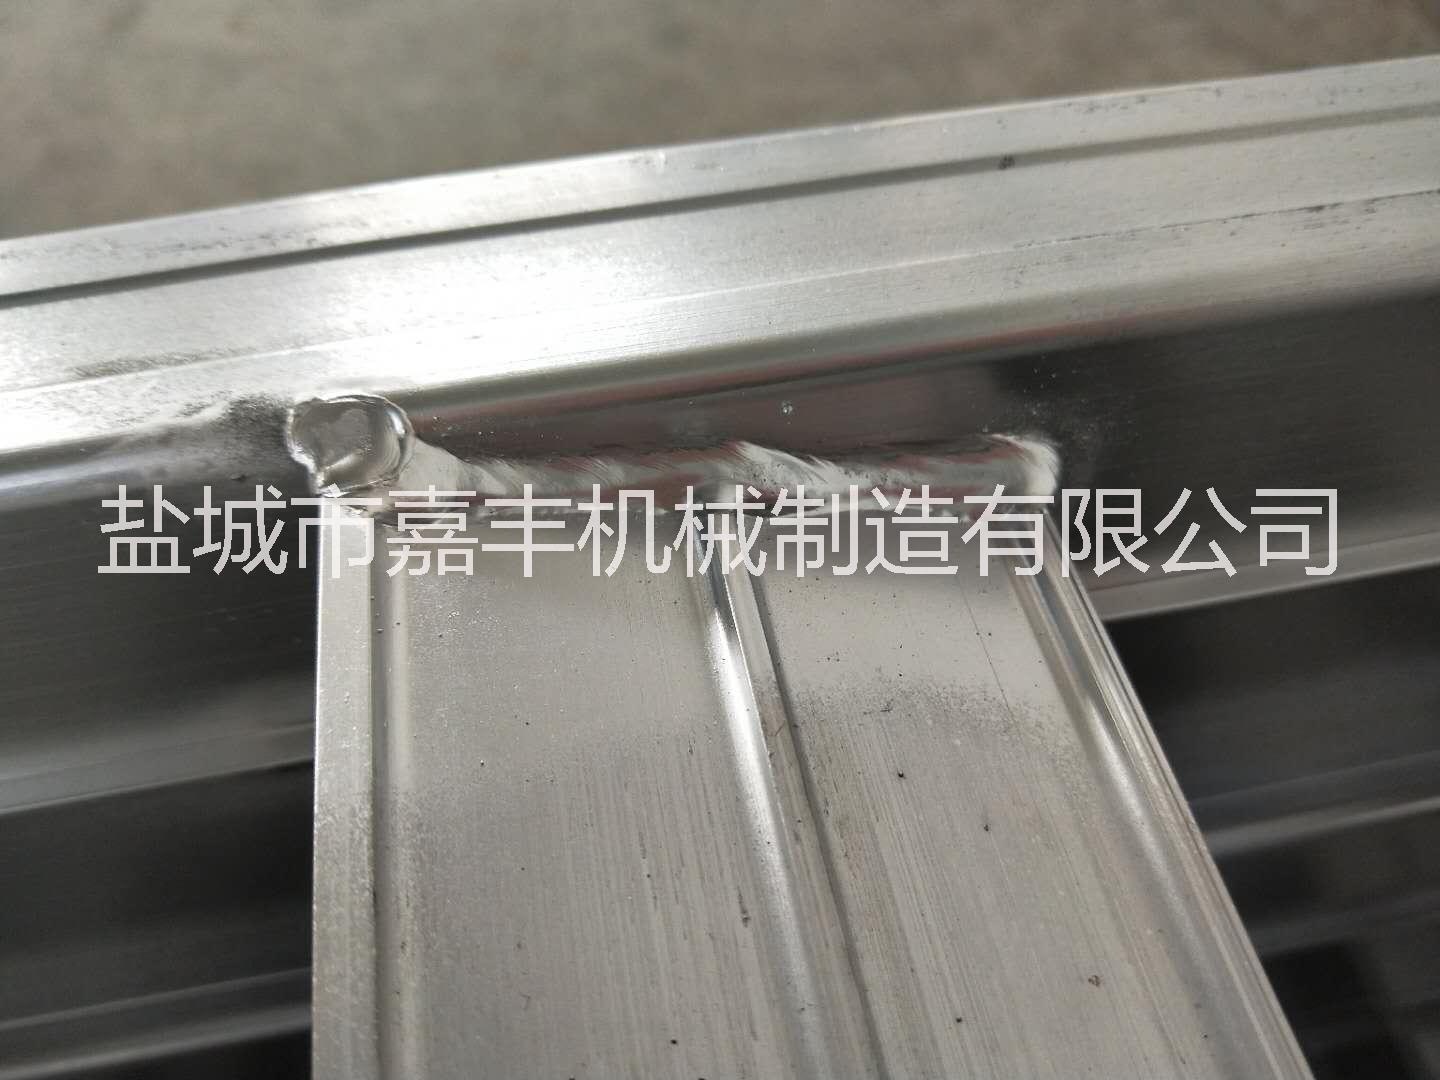 铝焊接深加工,铝焊接对外加工 铝焊接深加工,铝合金脚手架焊接